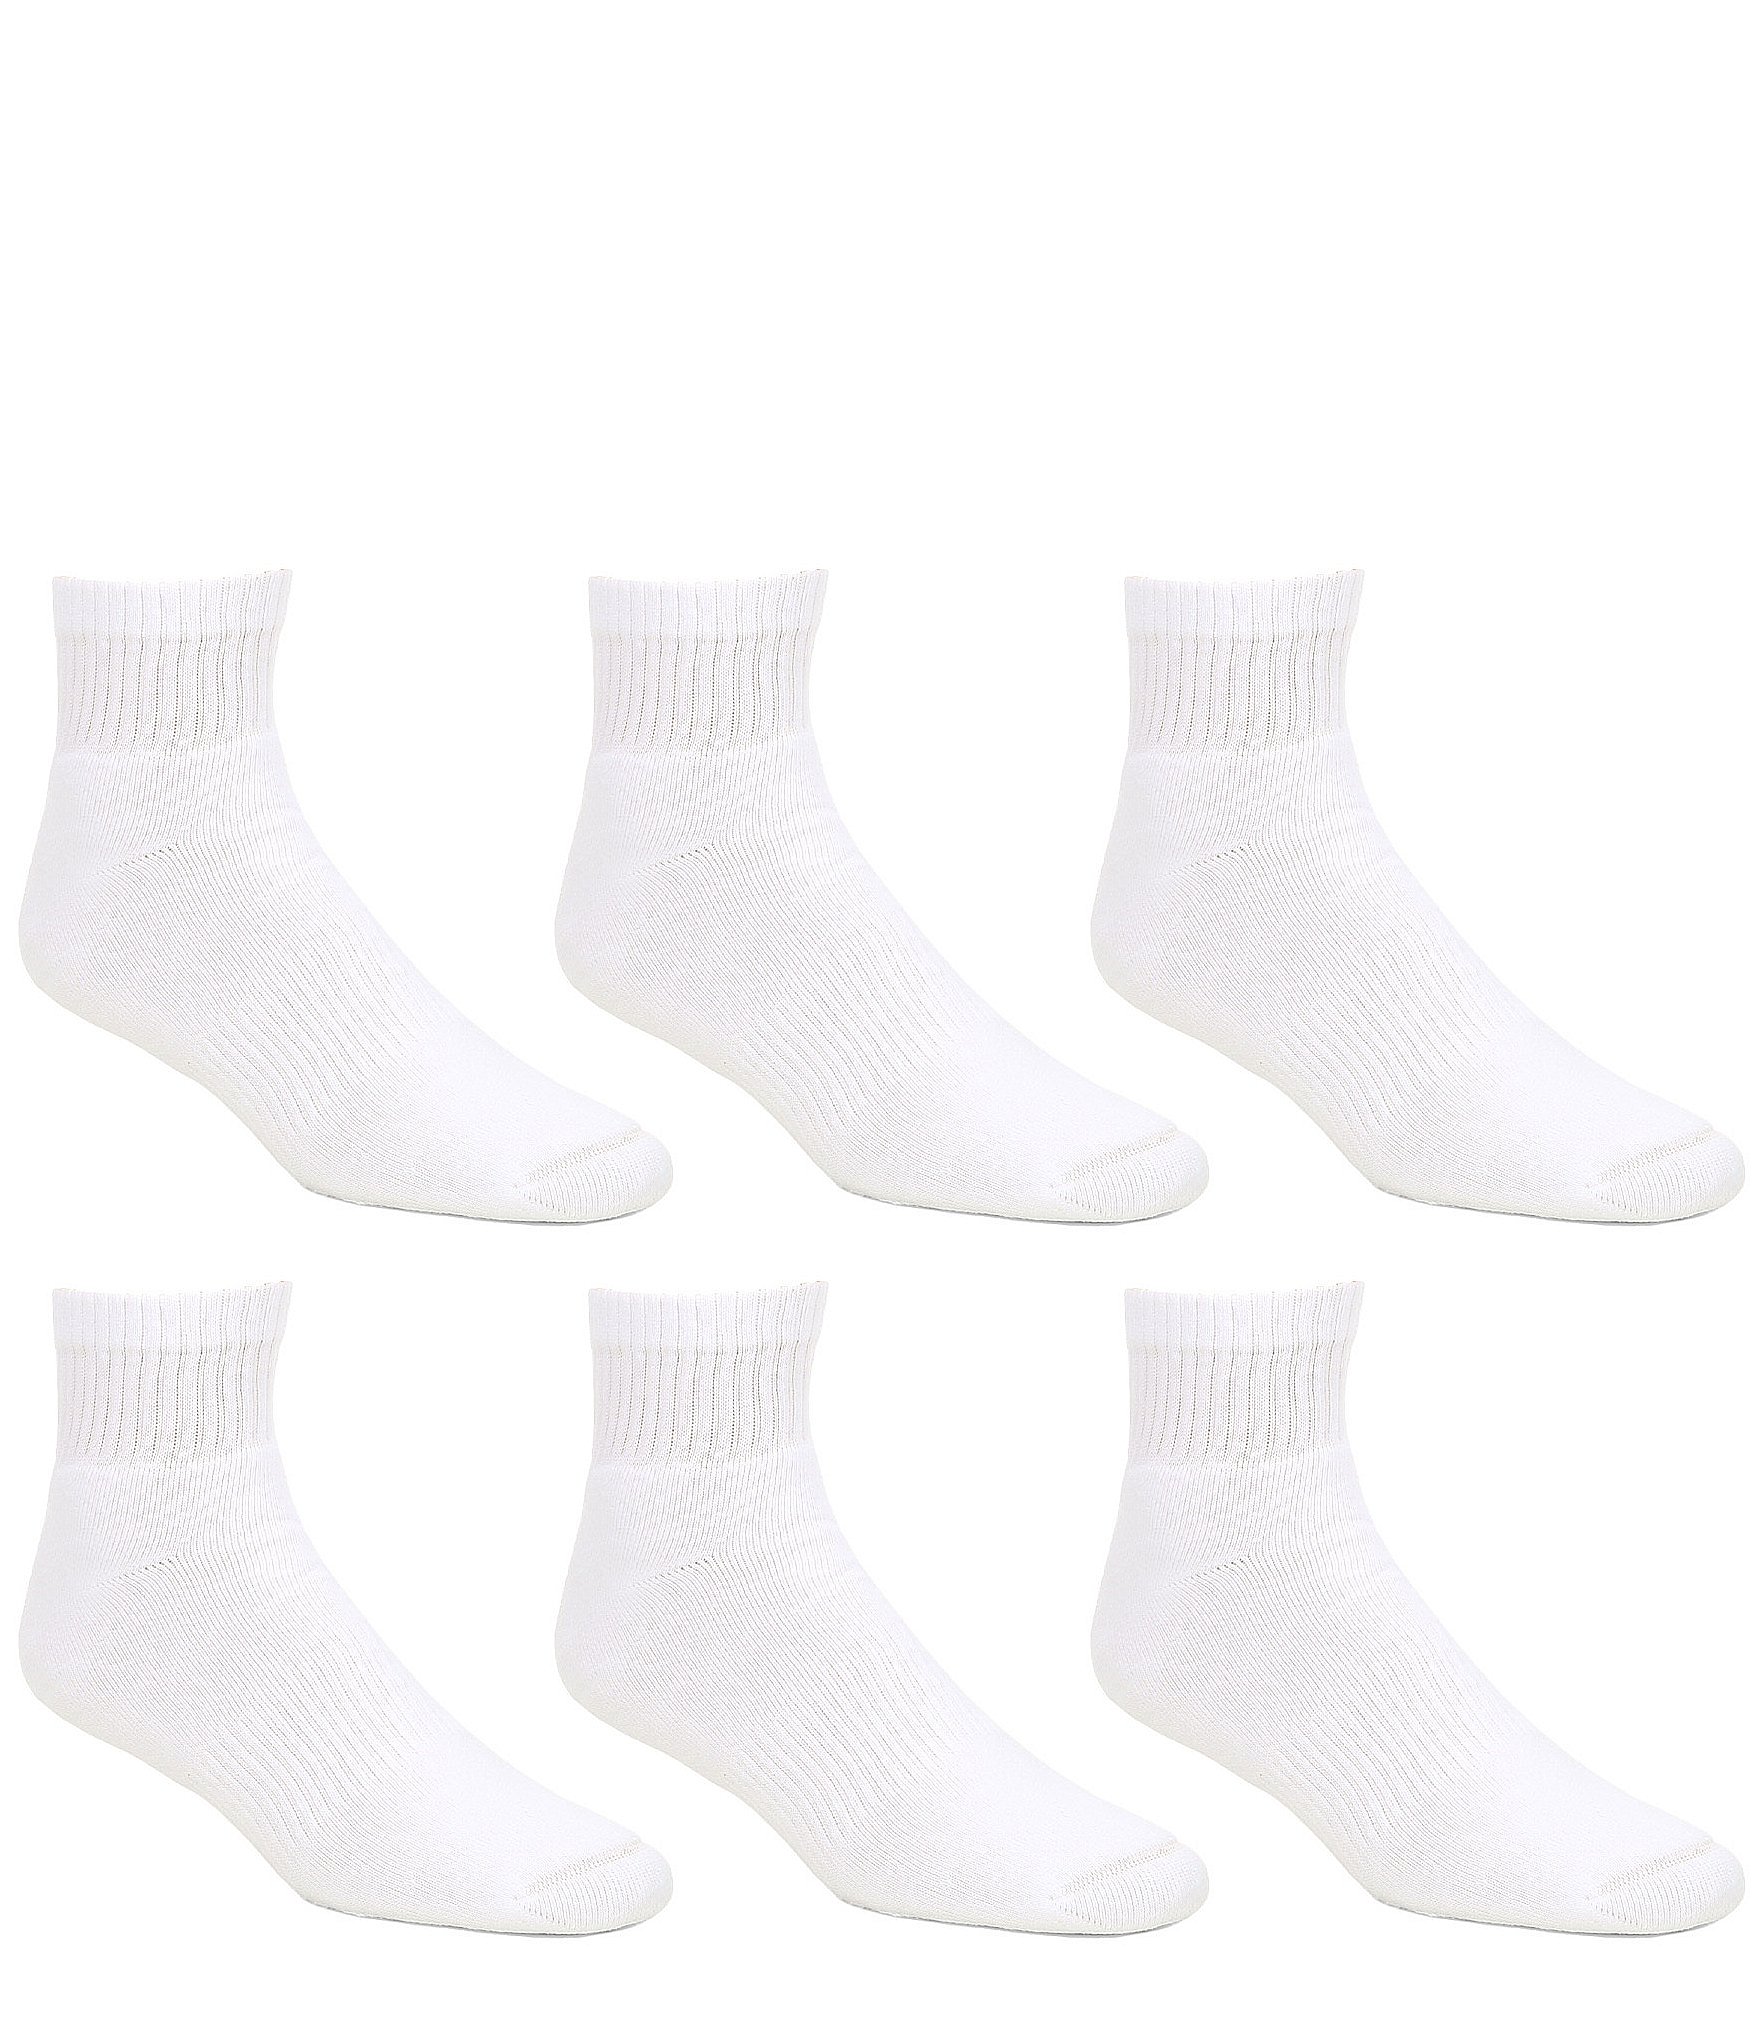 PXG Men's Jacquard Logo Ankle Socks in White